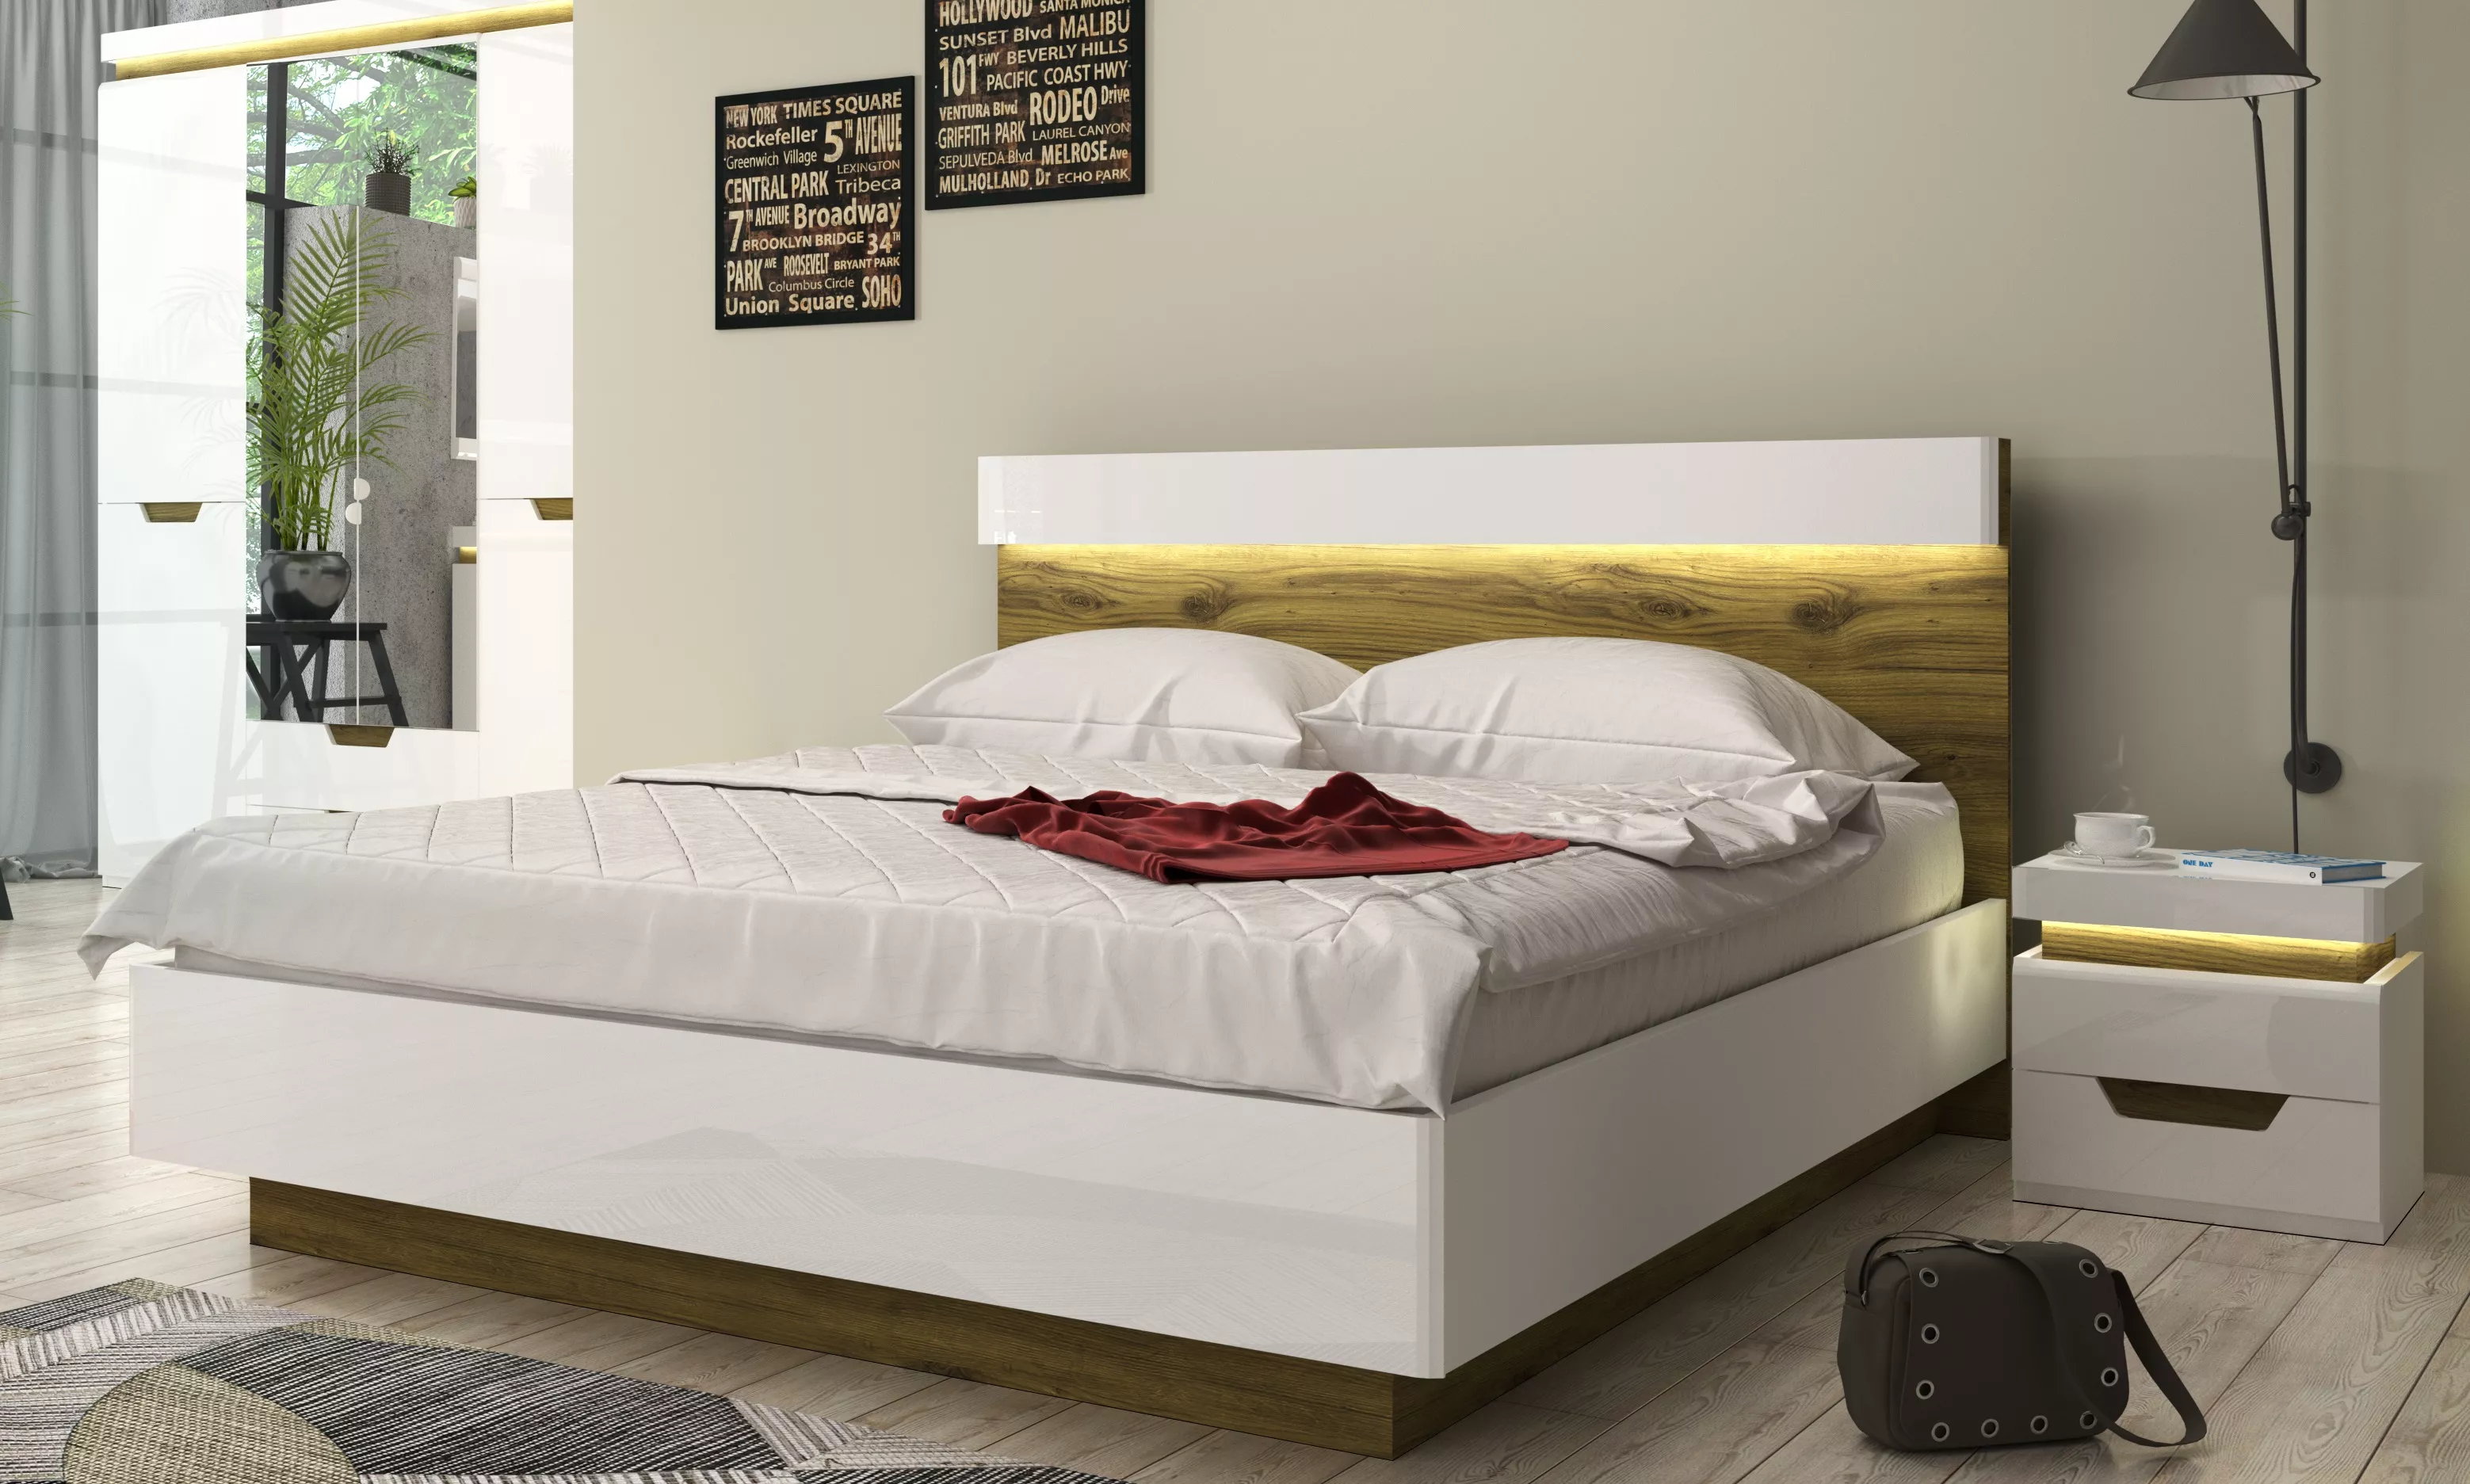 Спальня | Кровати | ТОРИНО Кровать 160 с подъемным механизмом Мебель ☆ IDEA в Севастополе| АНРЕКС, Брест anons